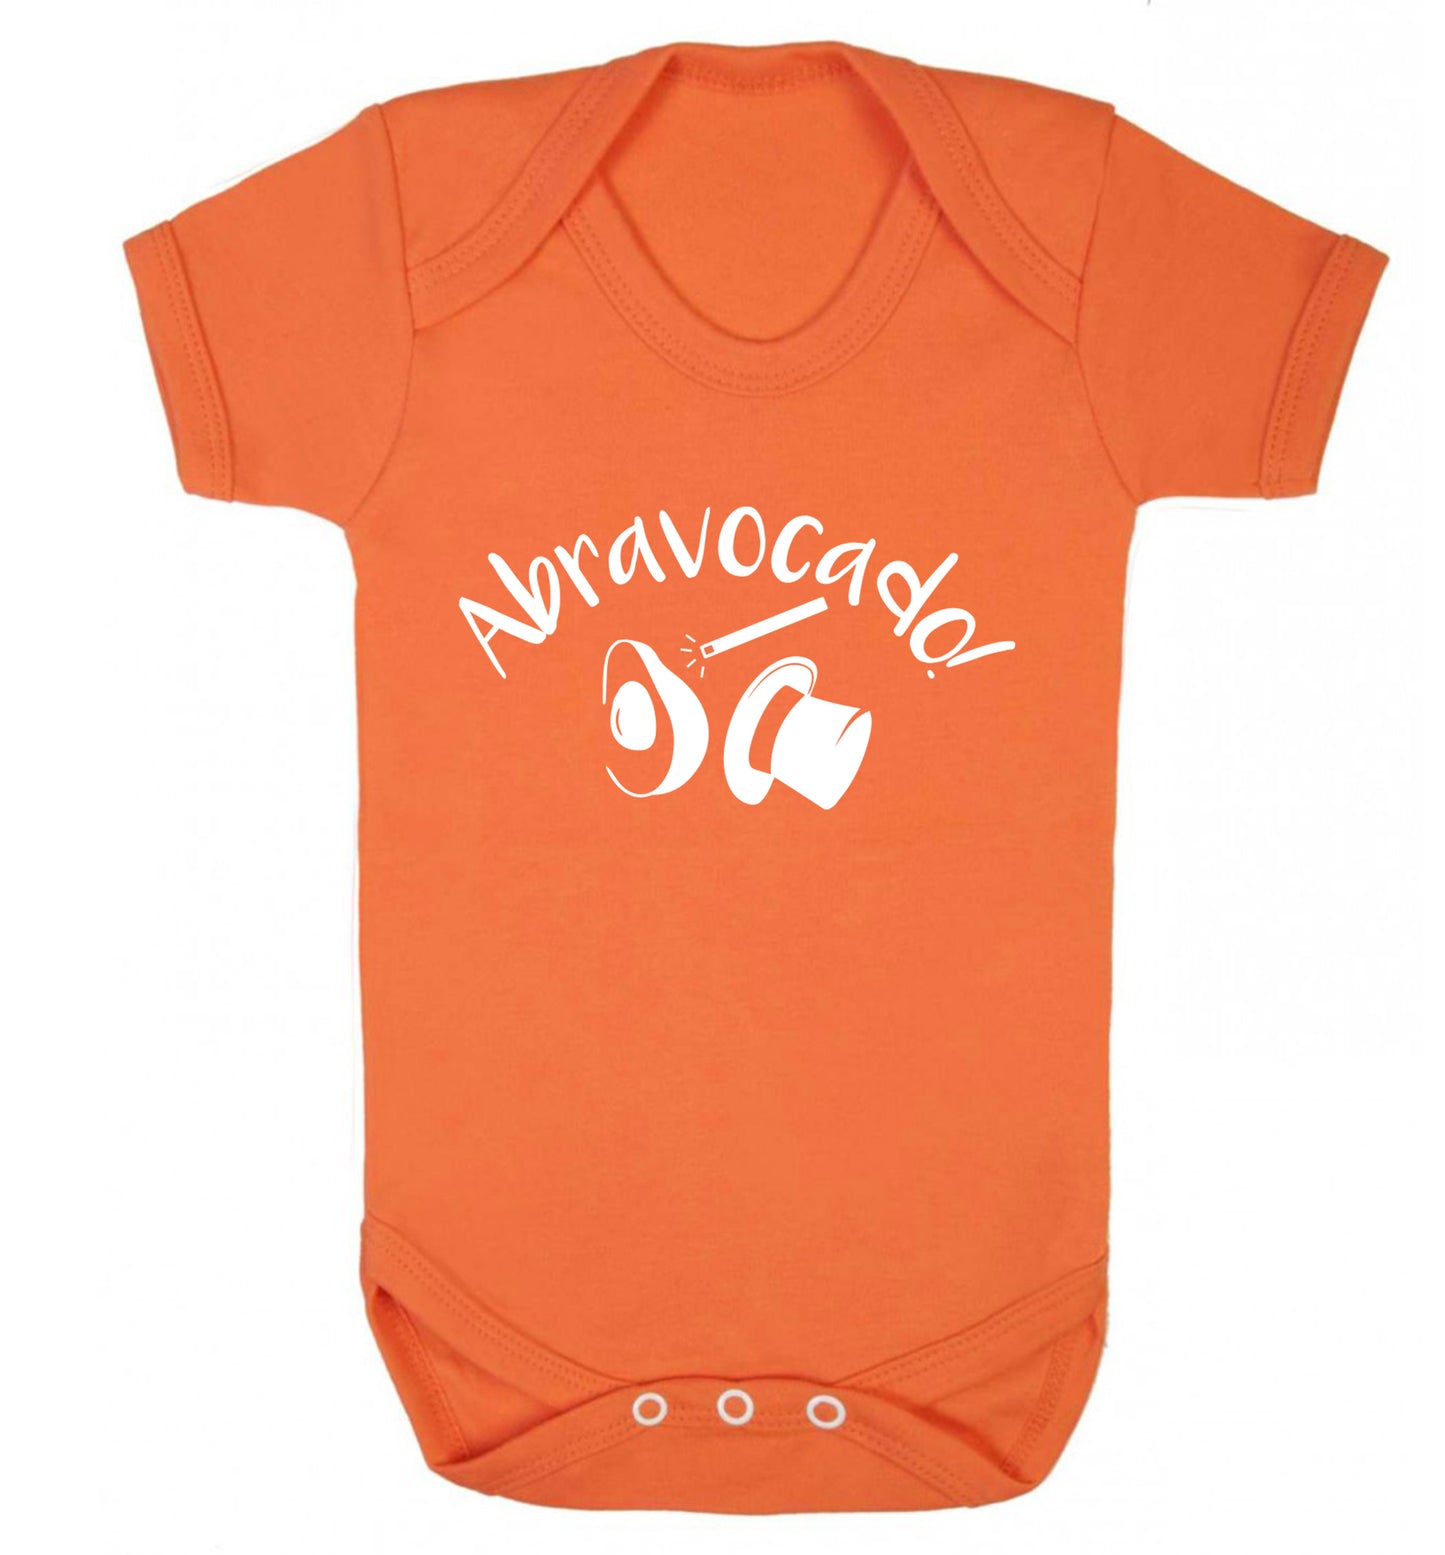 Abravocado Baby Vest orange 18-24 months